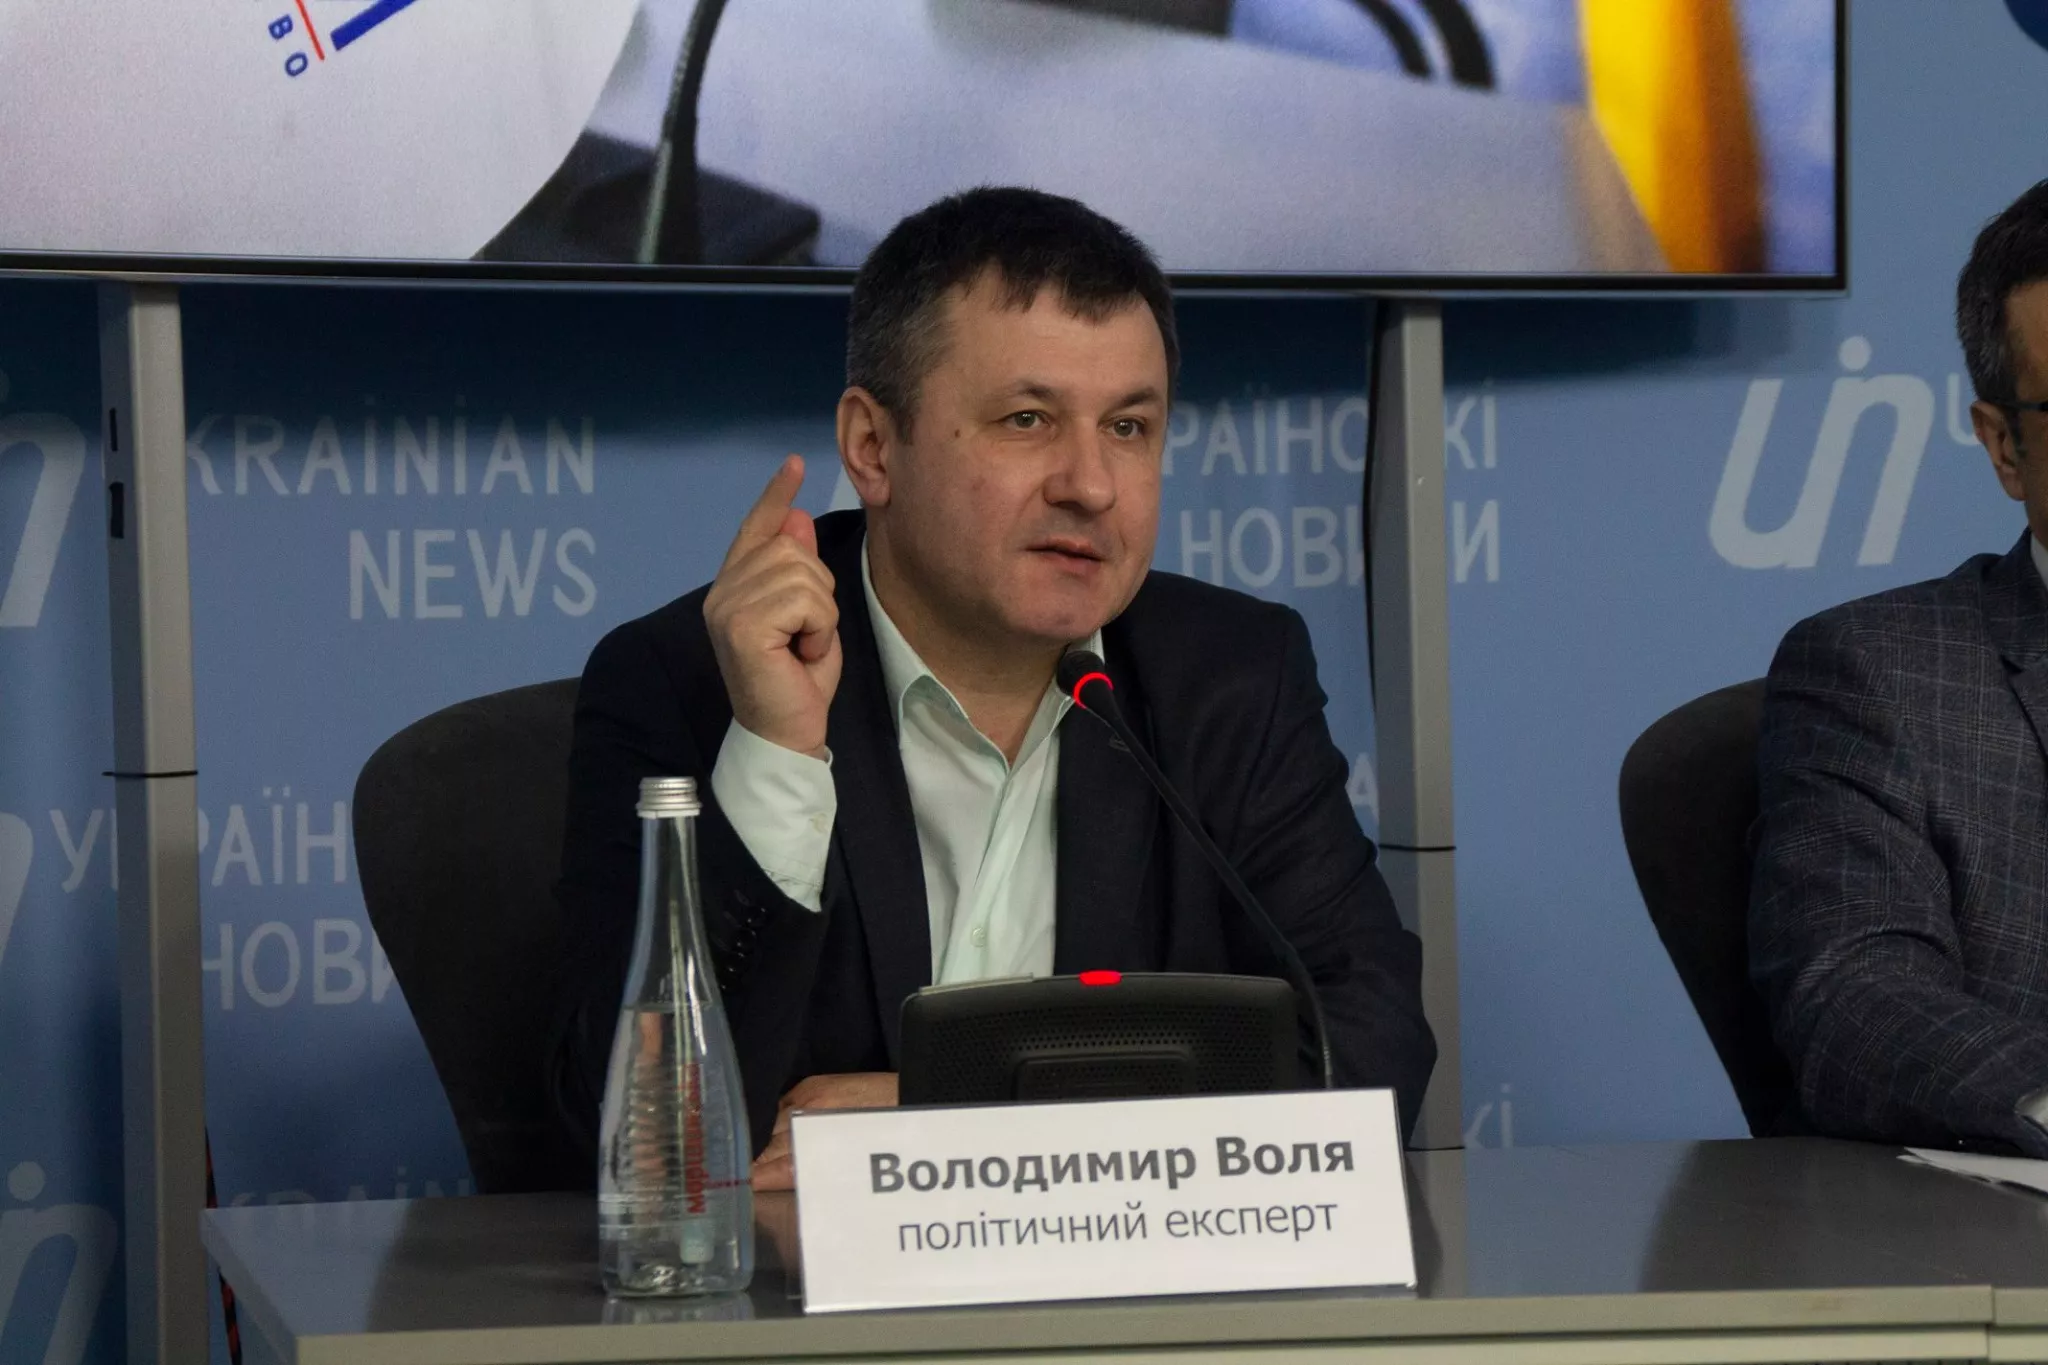 Володимир Воля: "Завдяки Меркель на зустрічі в Мінську було зупинено наступ ворожих сил на Донбасі"